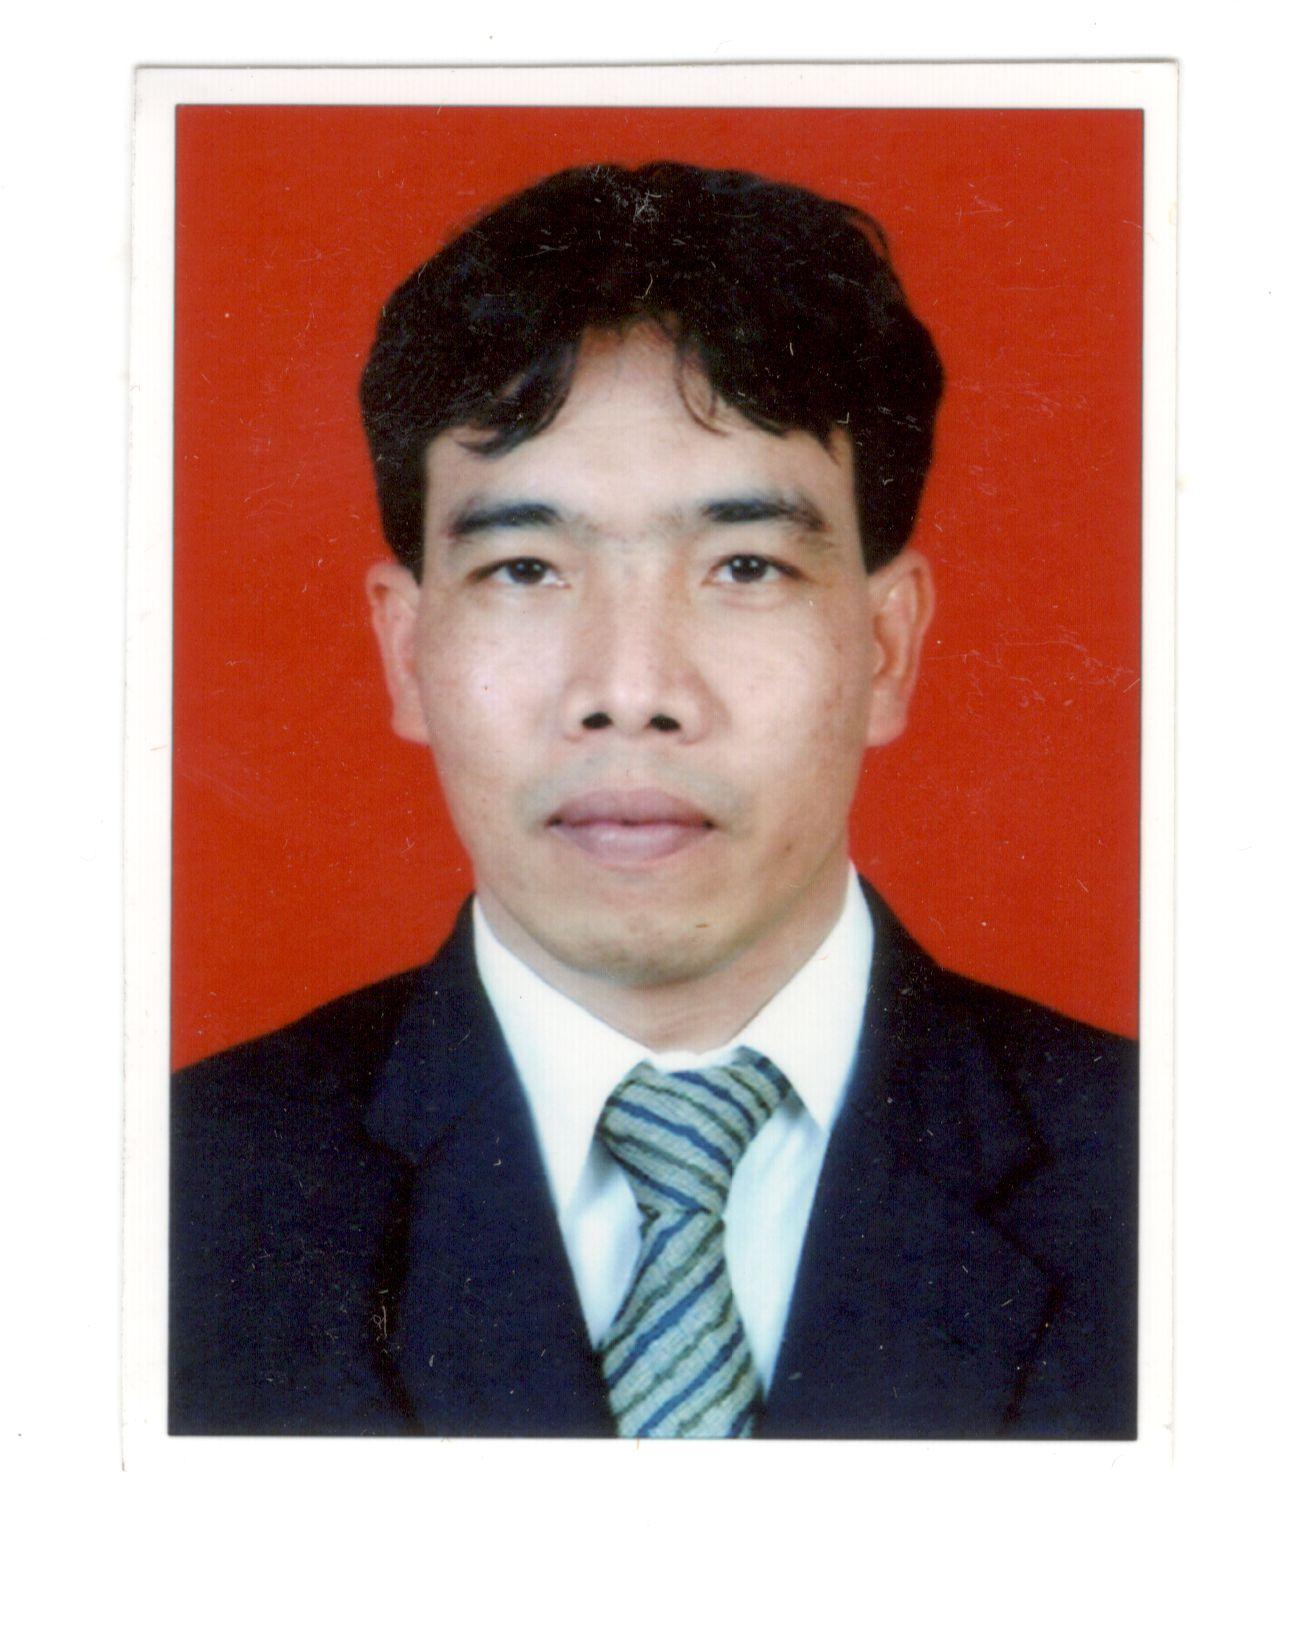 User profile picture